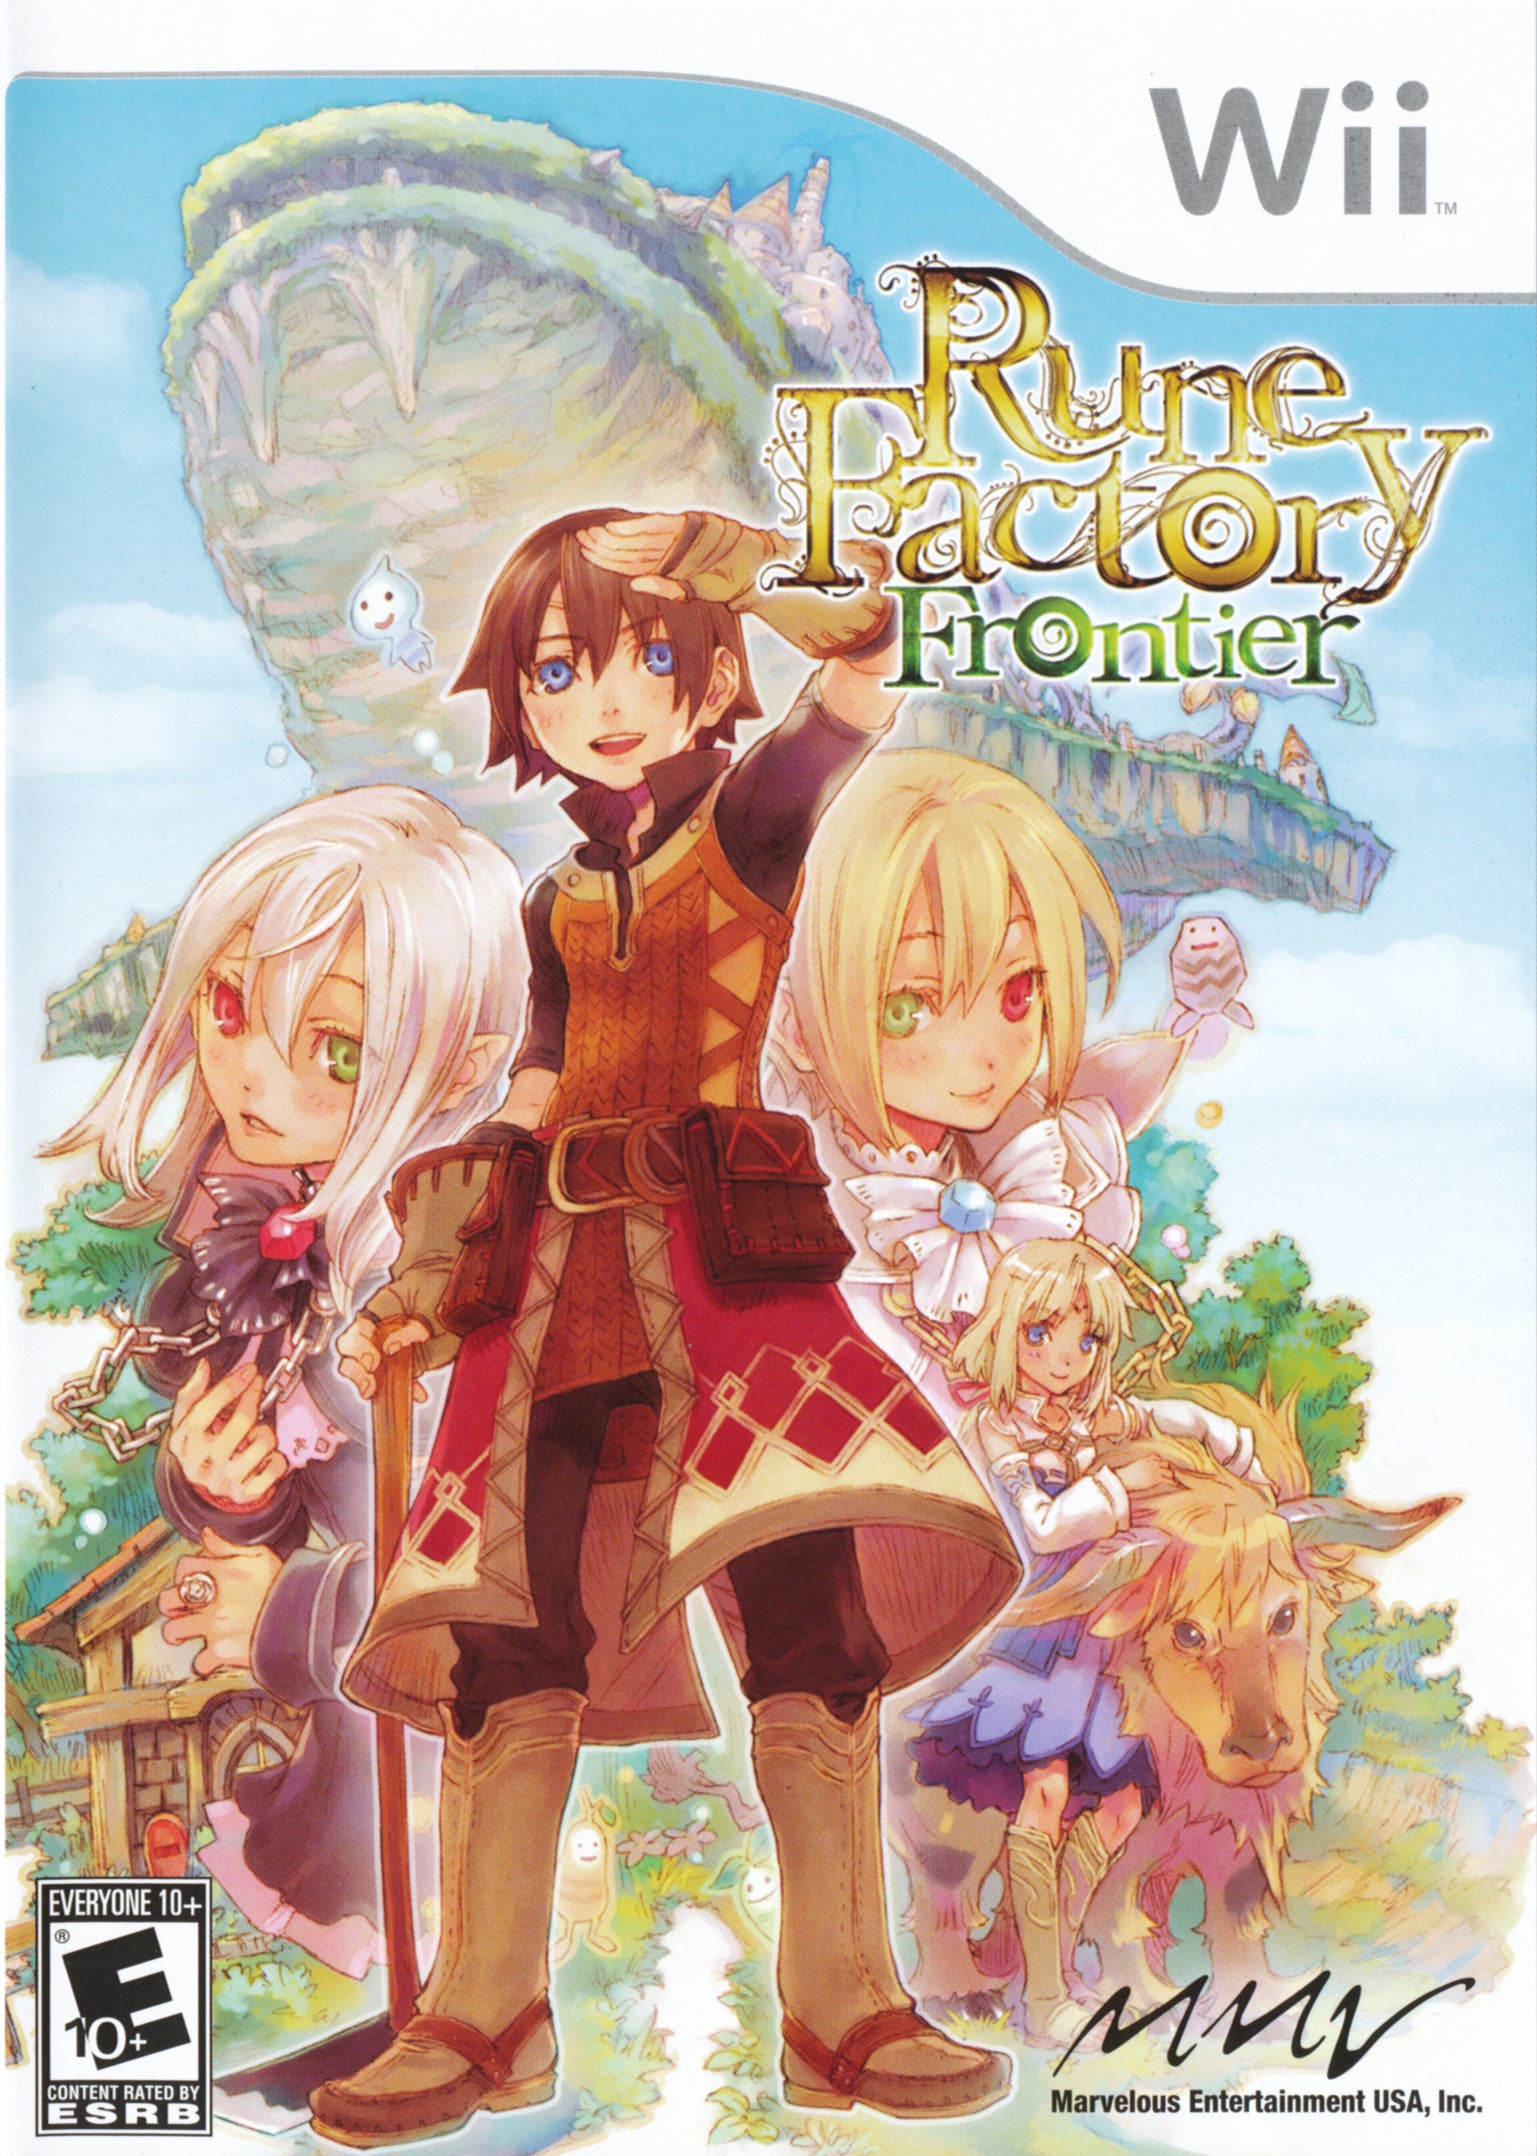 Rune Factory: Frontier - Wii Game